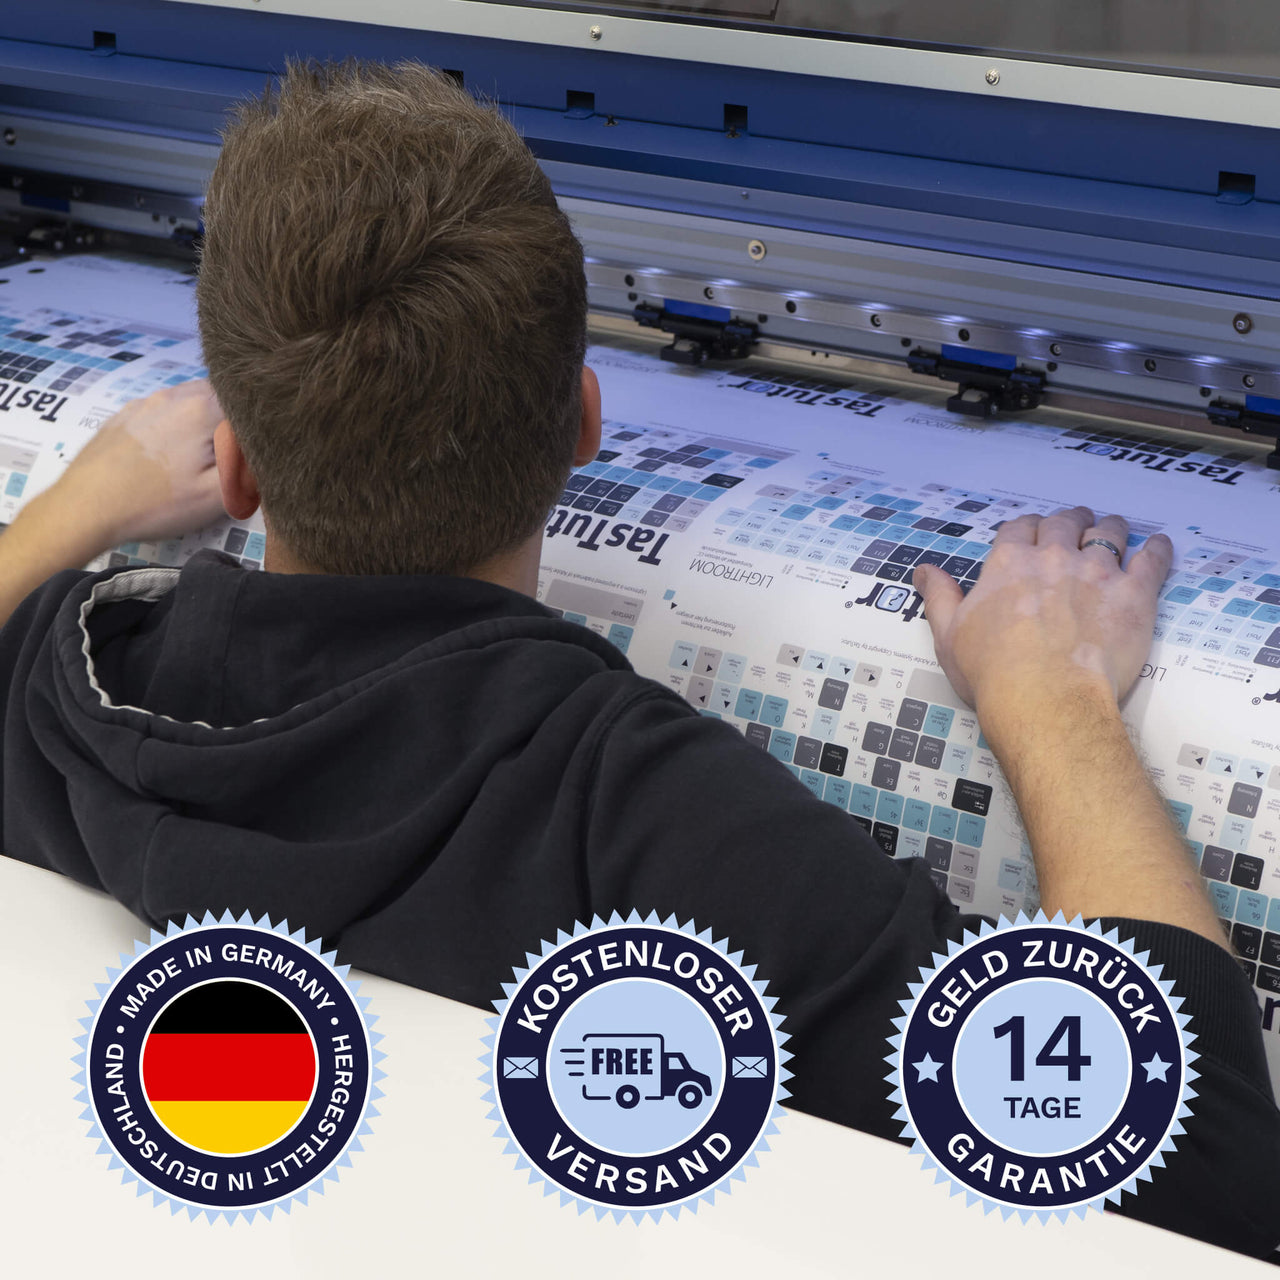 Blender Tastaturaufkleber werden in Deutschland hergestellt. Der Versand ist kostenlos und wir gewährleisten 14 Tage Geld zurück Garantie | TasTutor